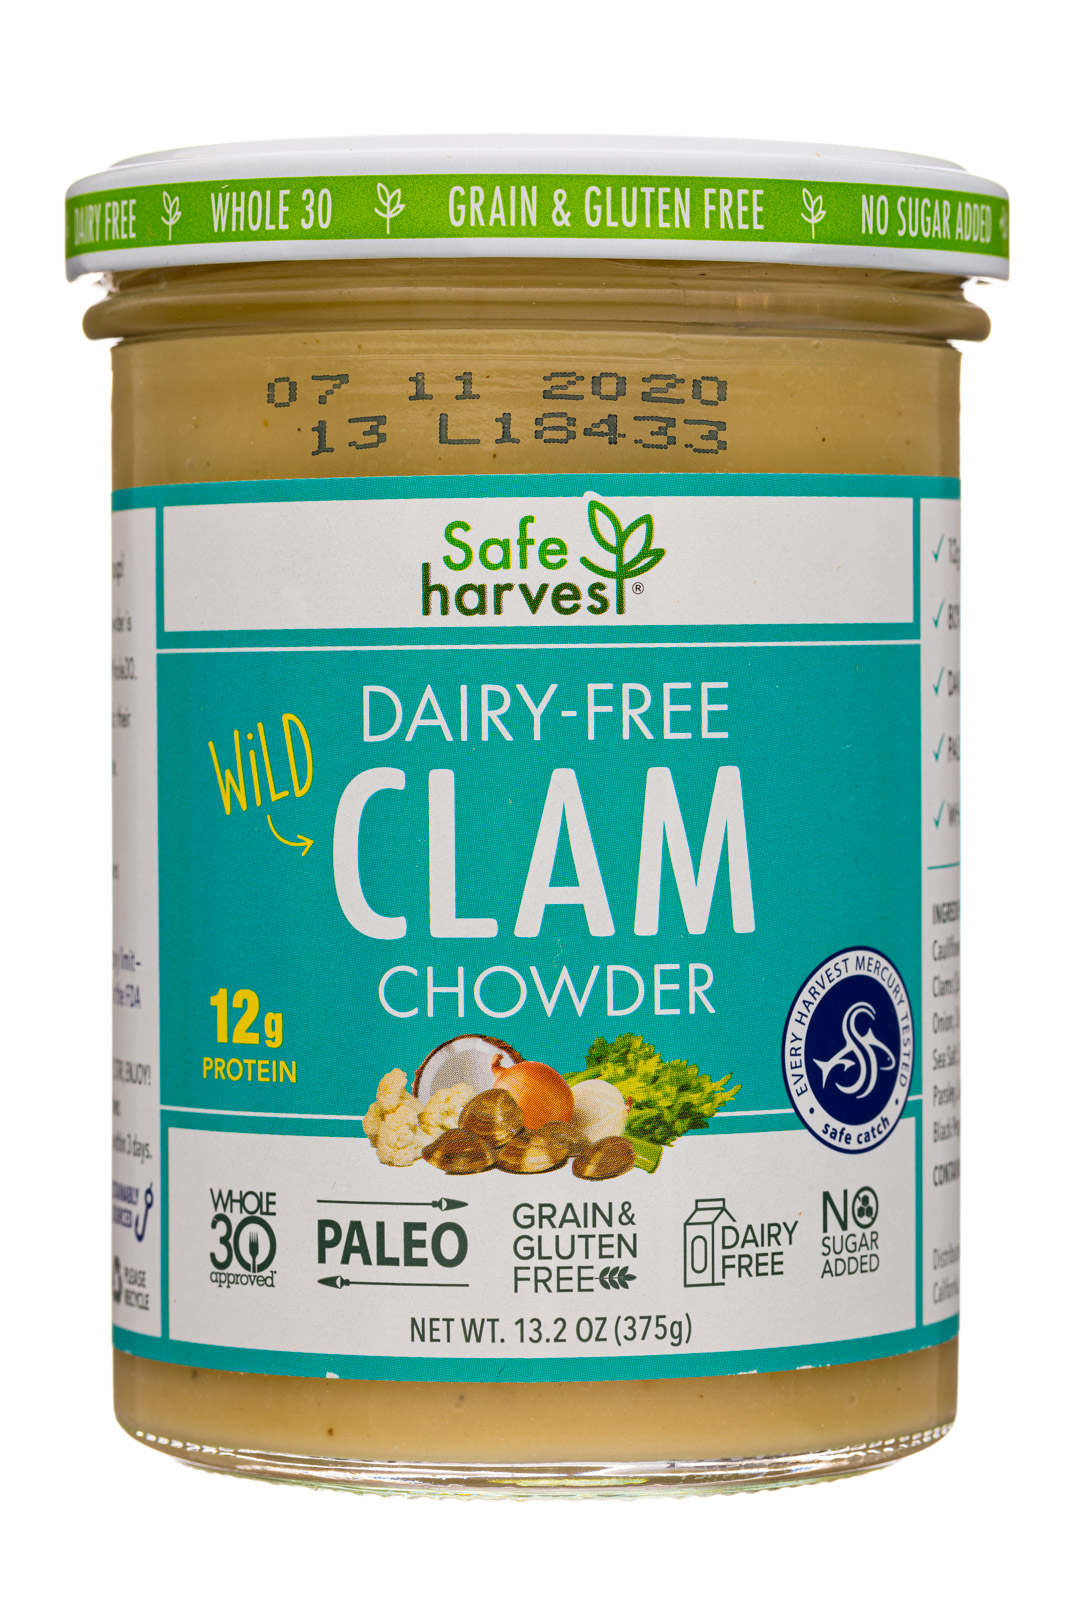 Dairy-Free Clam Chowder